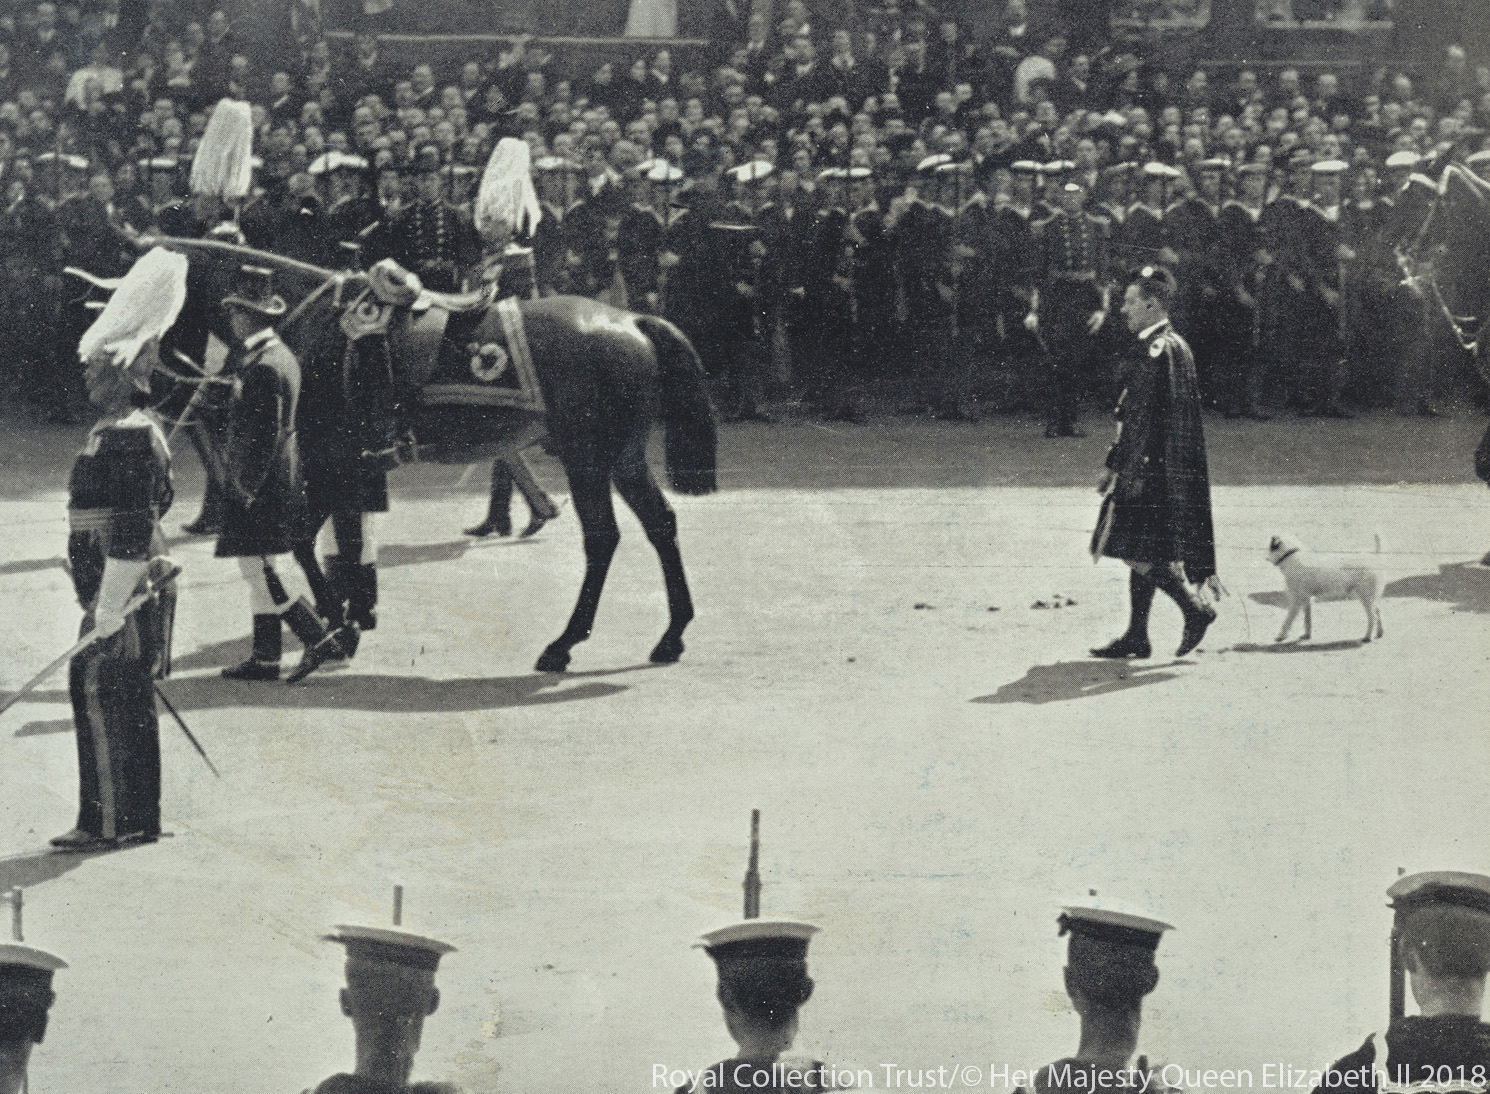 Caesar walks behind King Edward VII's coffin